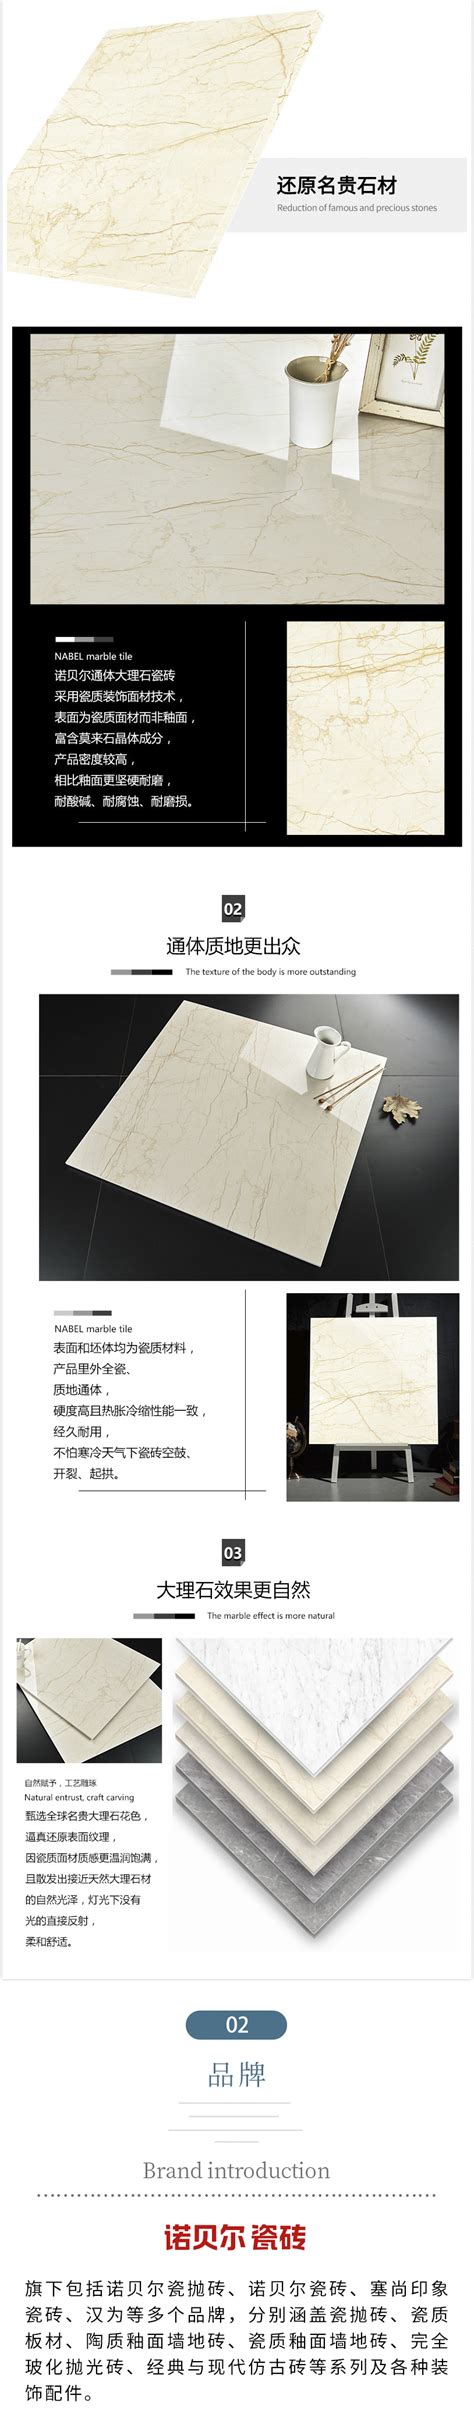 诺贝尔瓷砖800*800mm价格,图片,参数-建材瓷砖瓷抛砖-北京房天下家居装修网